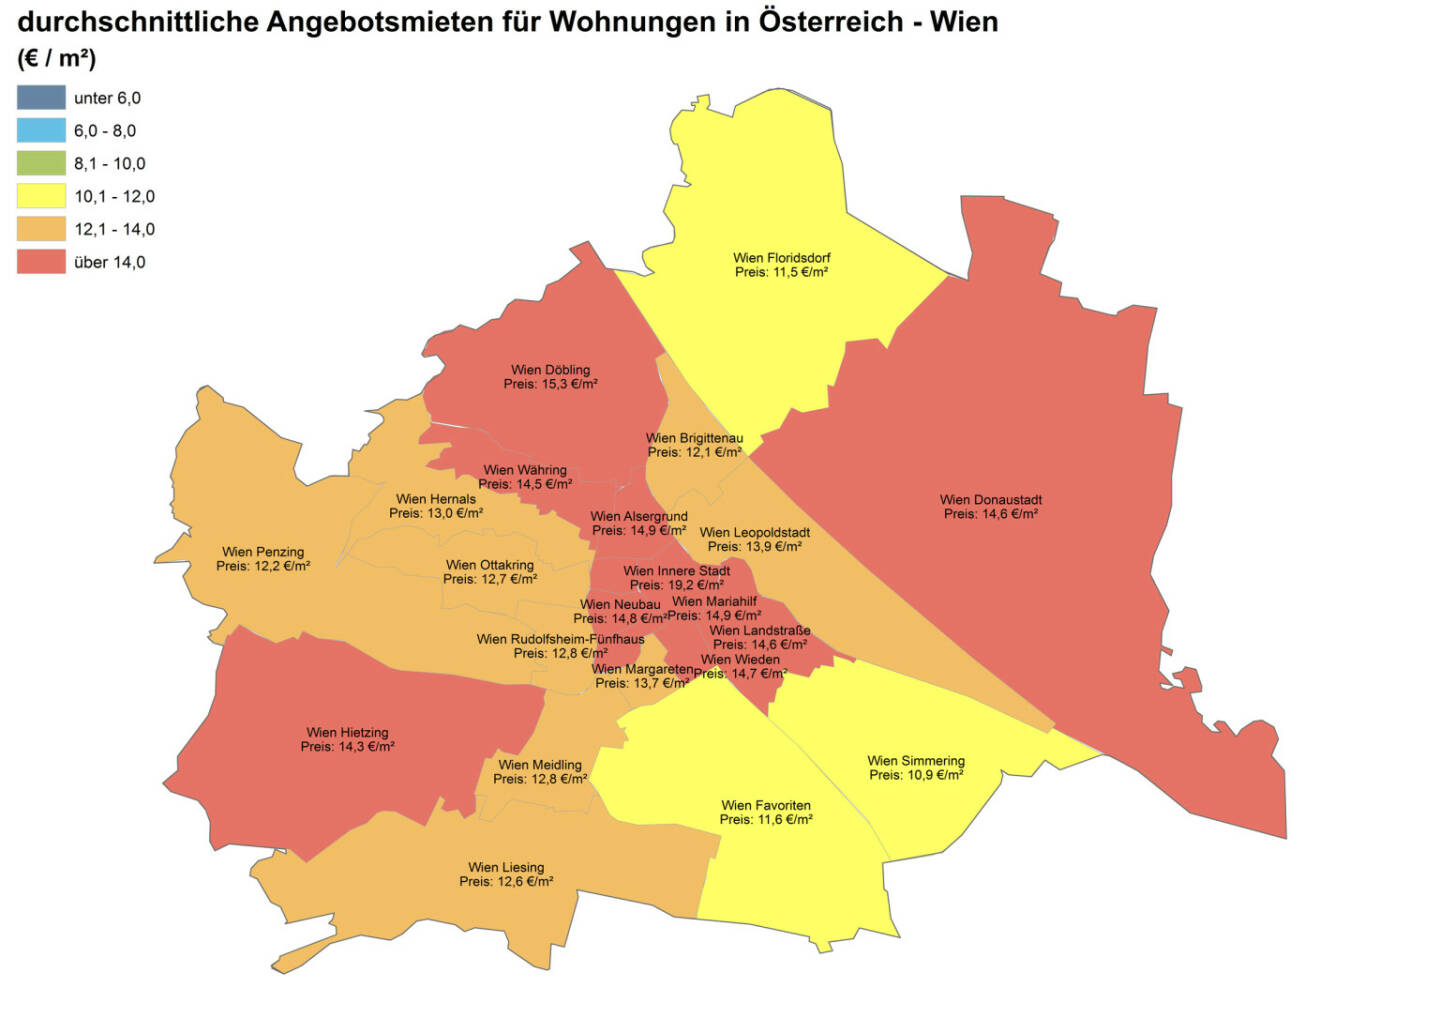 Durchschnittliche Angebotsmieten für Wohnungen in Österreich - Wien, Quelle: ImmobilienScout24 und Immobilienring IR